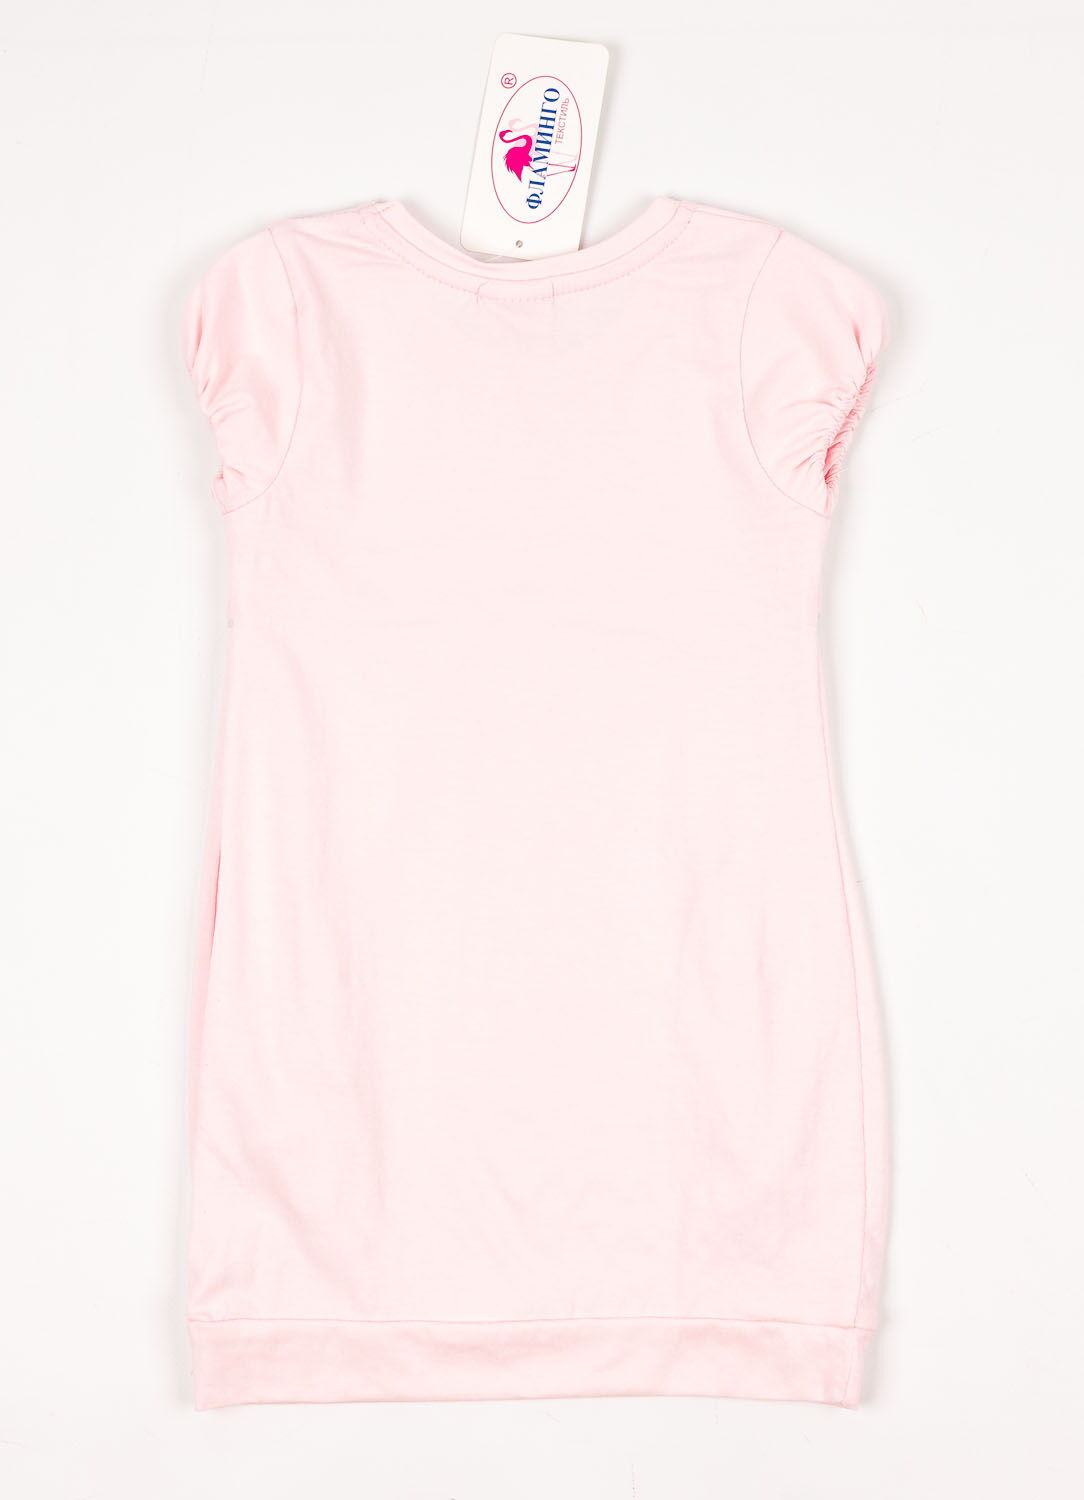 Платье-туника для девочки Фламинго розовое 904-416 - размеры